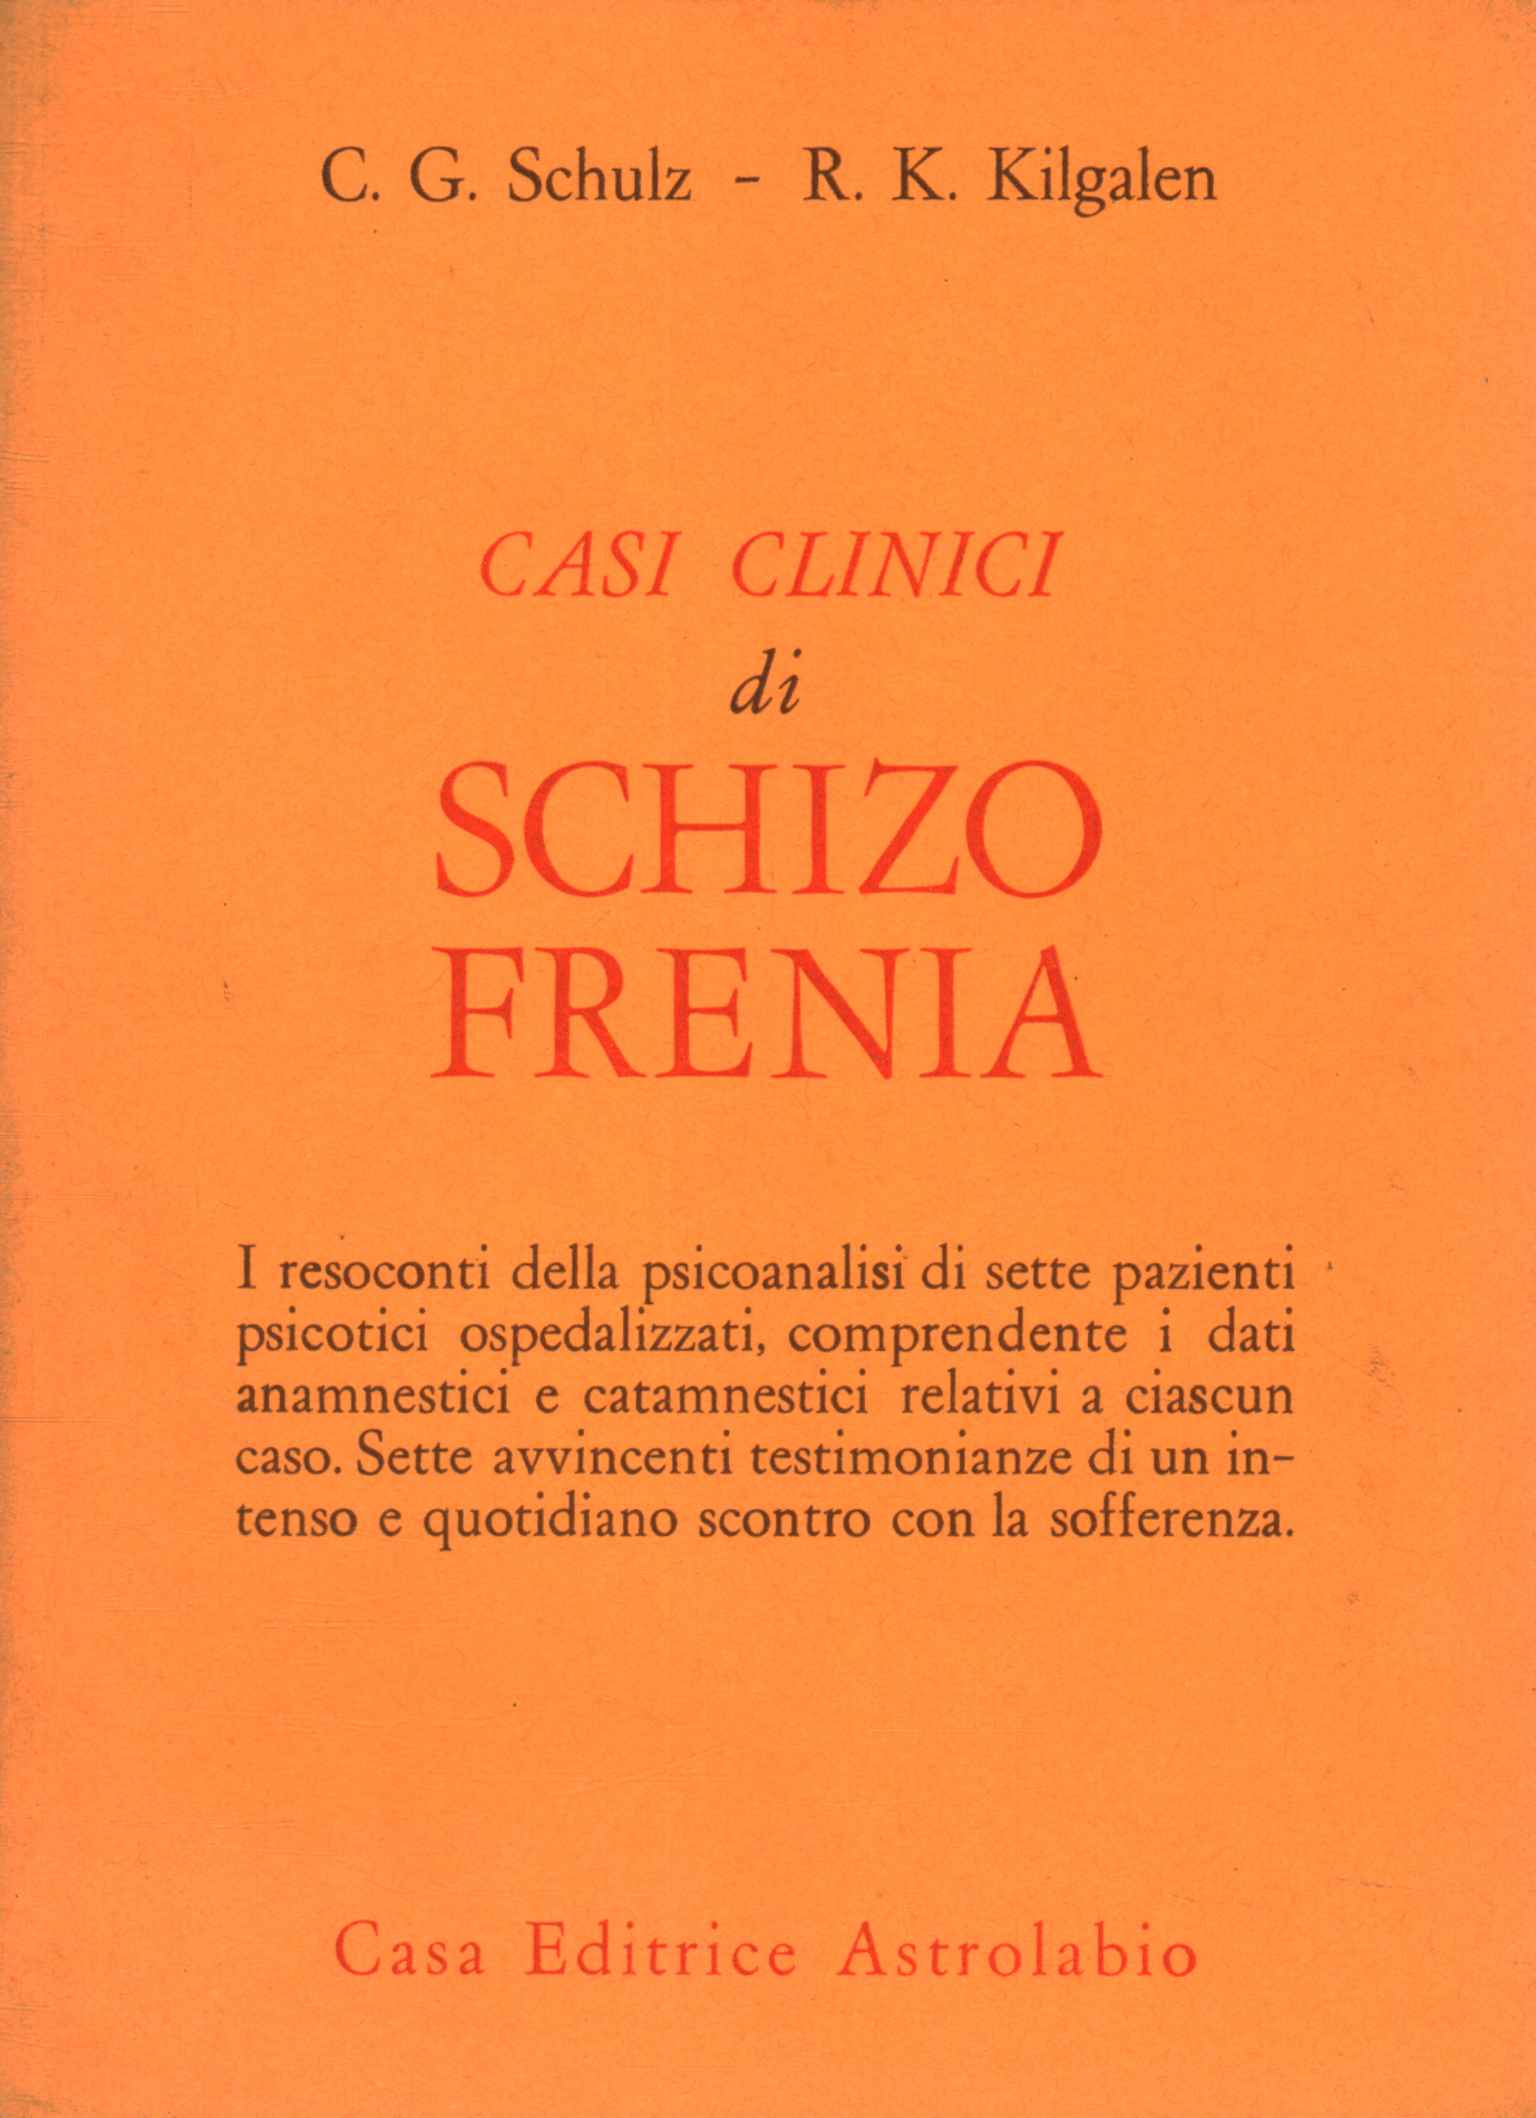 Clinical cases of schizophrenia